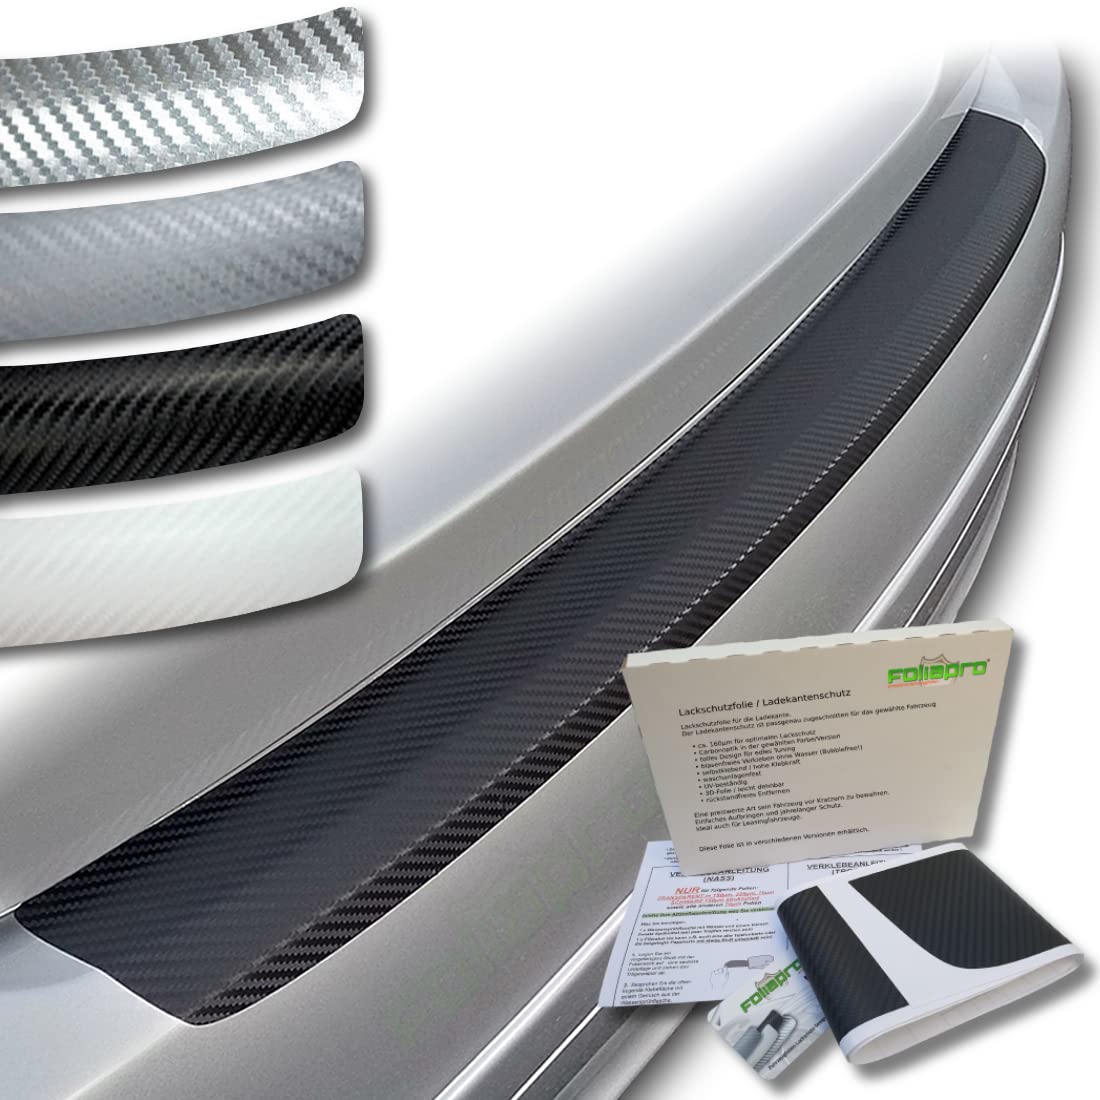 foliapro Lackschutzfolie Ladekantenschutz-Folie Carbonfolie Carbon - Fahrzeug und Foliensorte wählbar - für Audi A6 Avant C7 ab 2011 bis 2018 - Carbon weiß von foliapro